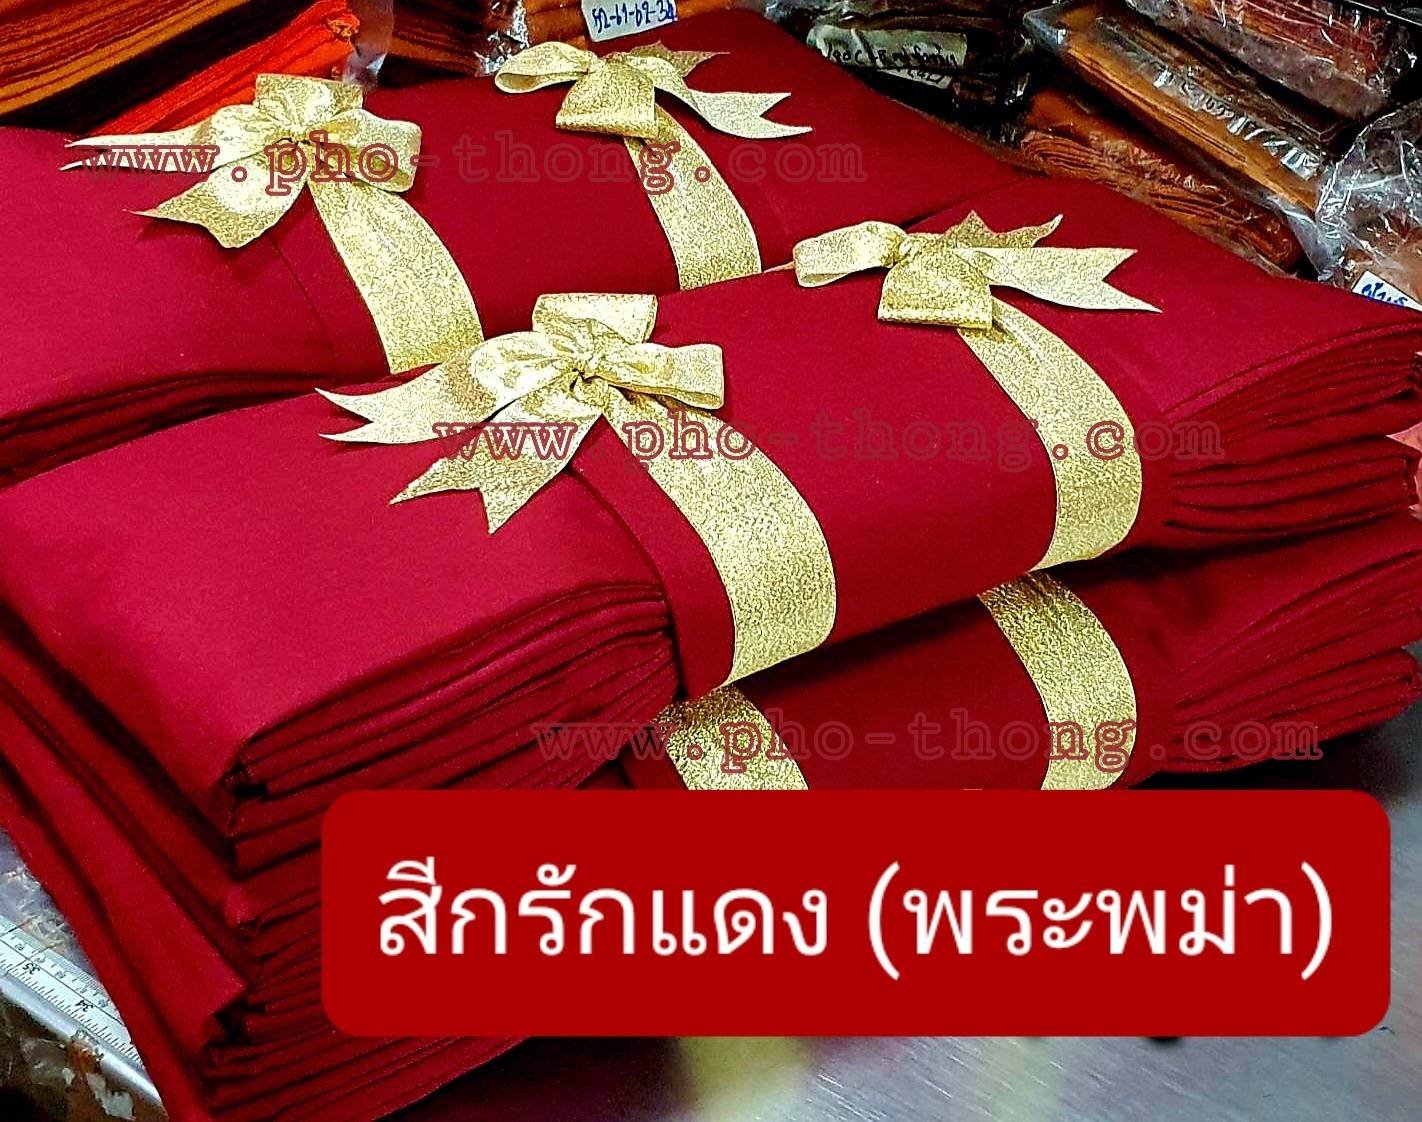 ไตรครอง 9 ขันธ์ (สังฆาฏิ 1 ชั้น - มหานิกาย) ผ้ามัสลิน/ผ้าซันฟอไรส์ Premium Grade สีกรักแดง(พระพม่า) ขนาด 2 ม.